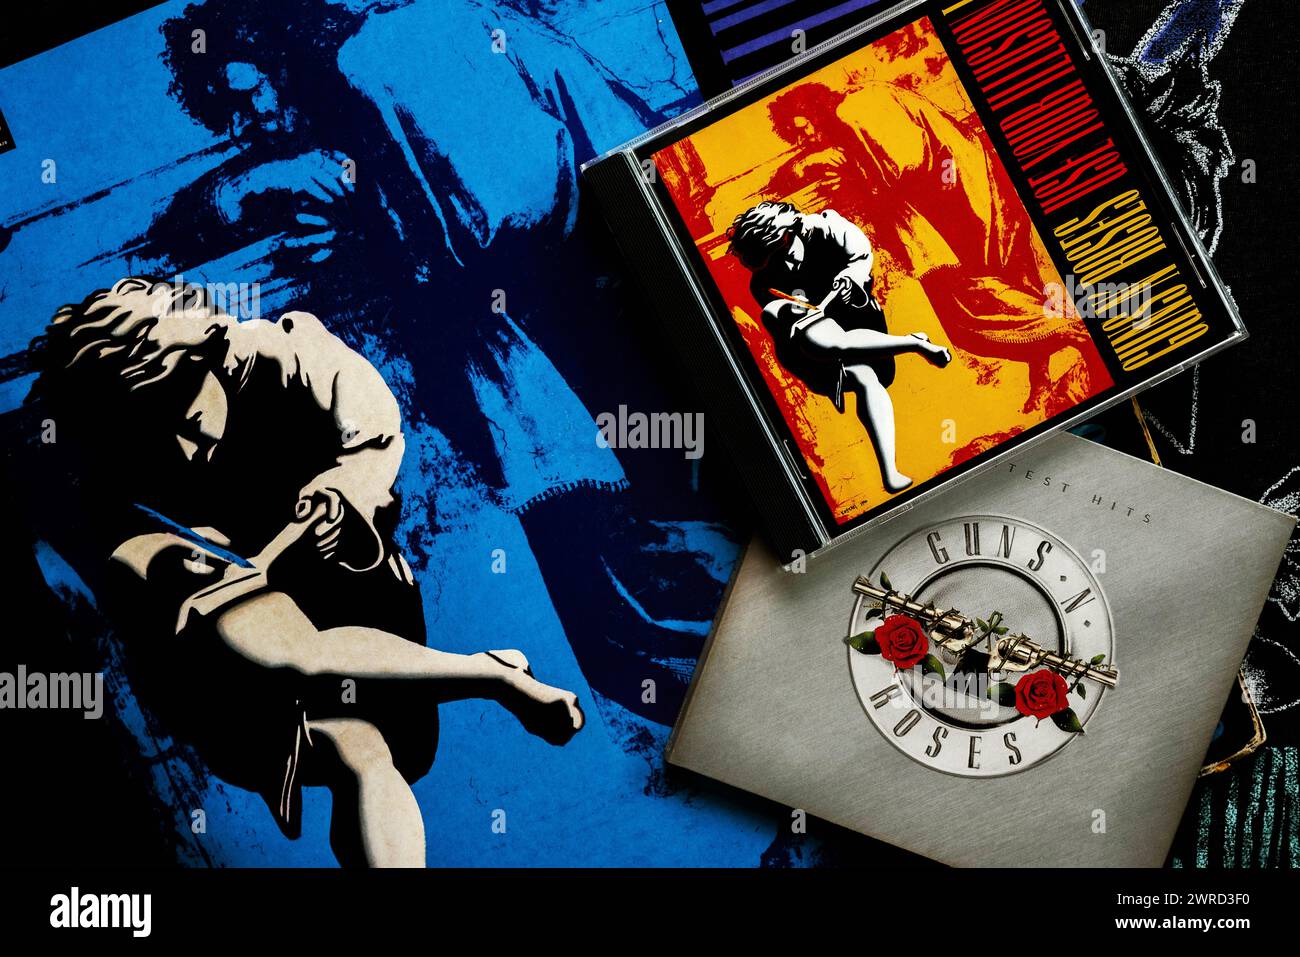 Primo piano dell'lp in vinile Use Your Illusion of the american heavy metal Group Guns and Roses e cd Over su una maglietta. Editoriale illustrativo Foto Stock